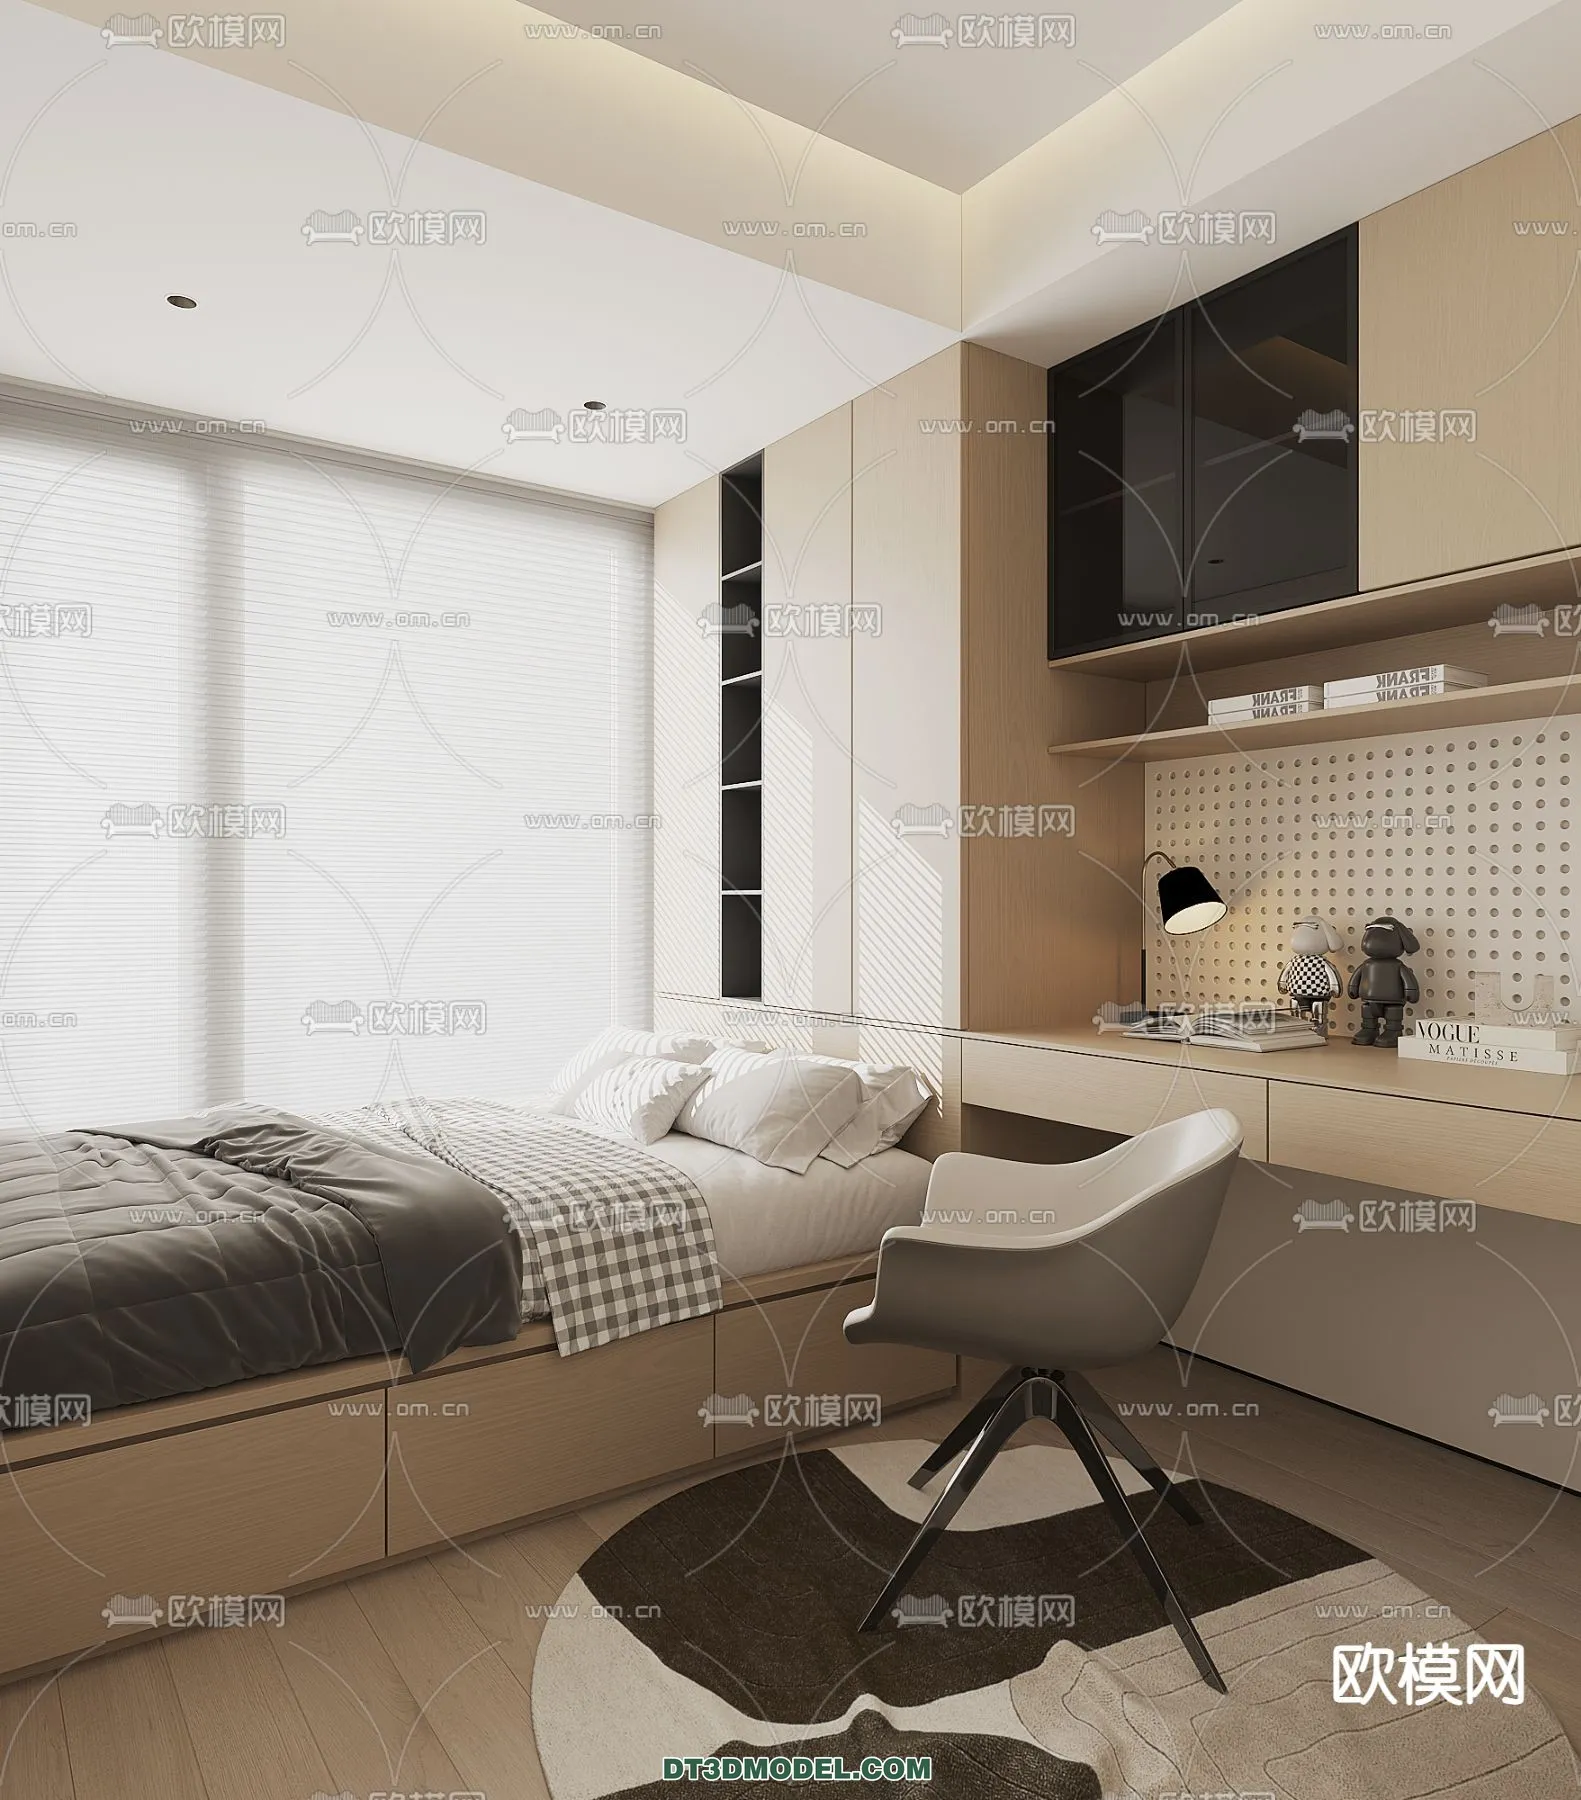 Tatami Bedroom – Japan Bedroom – 3D Scene – 005